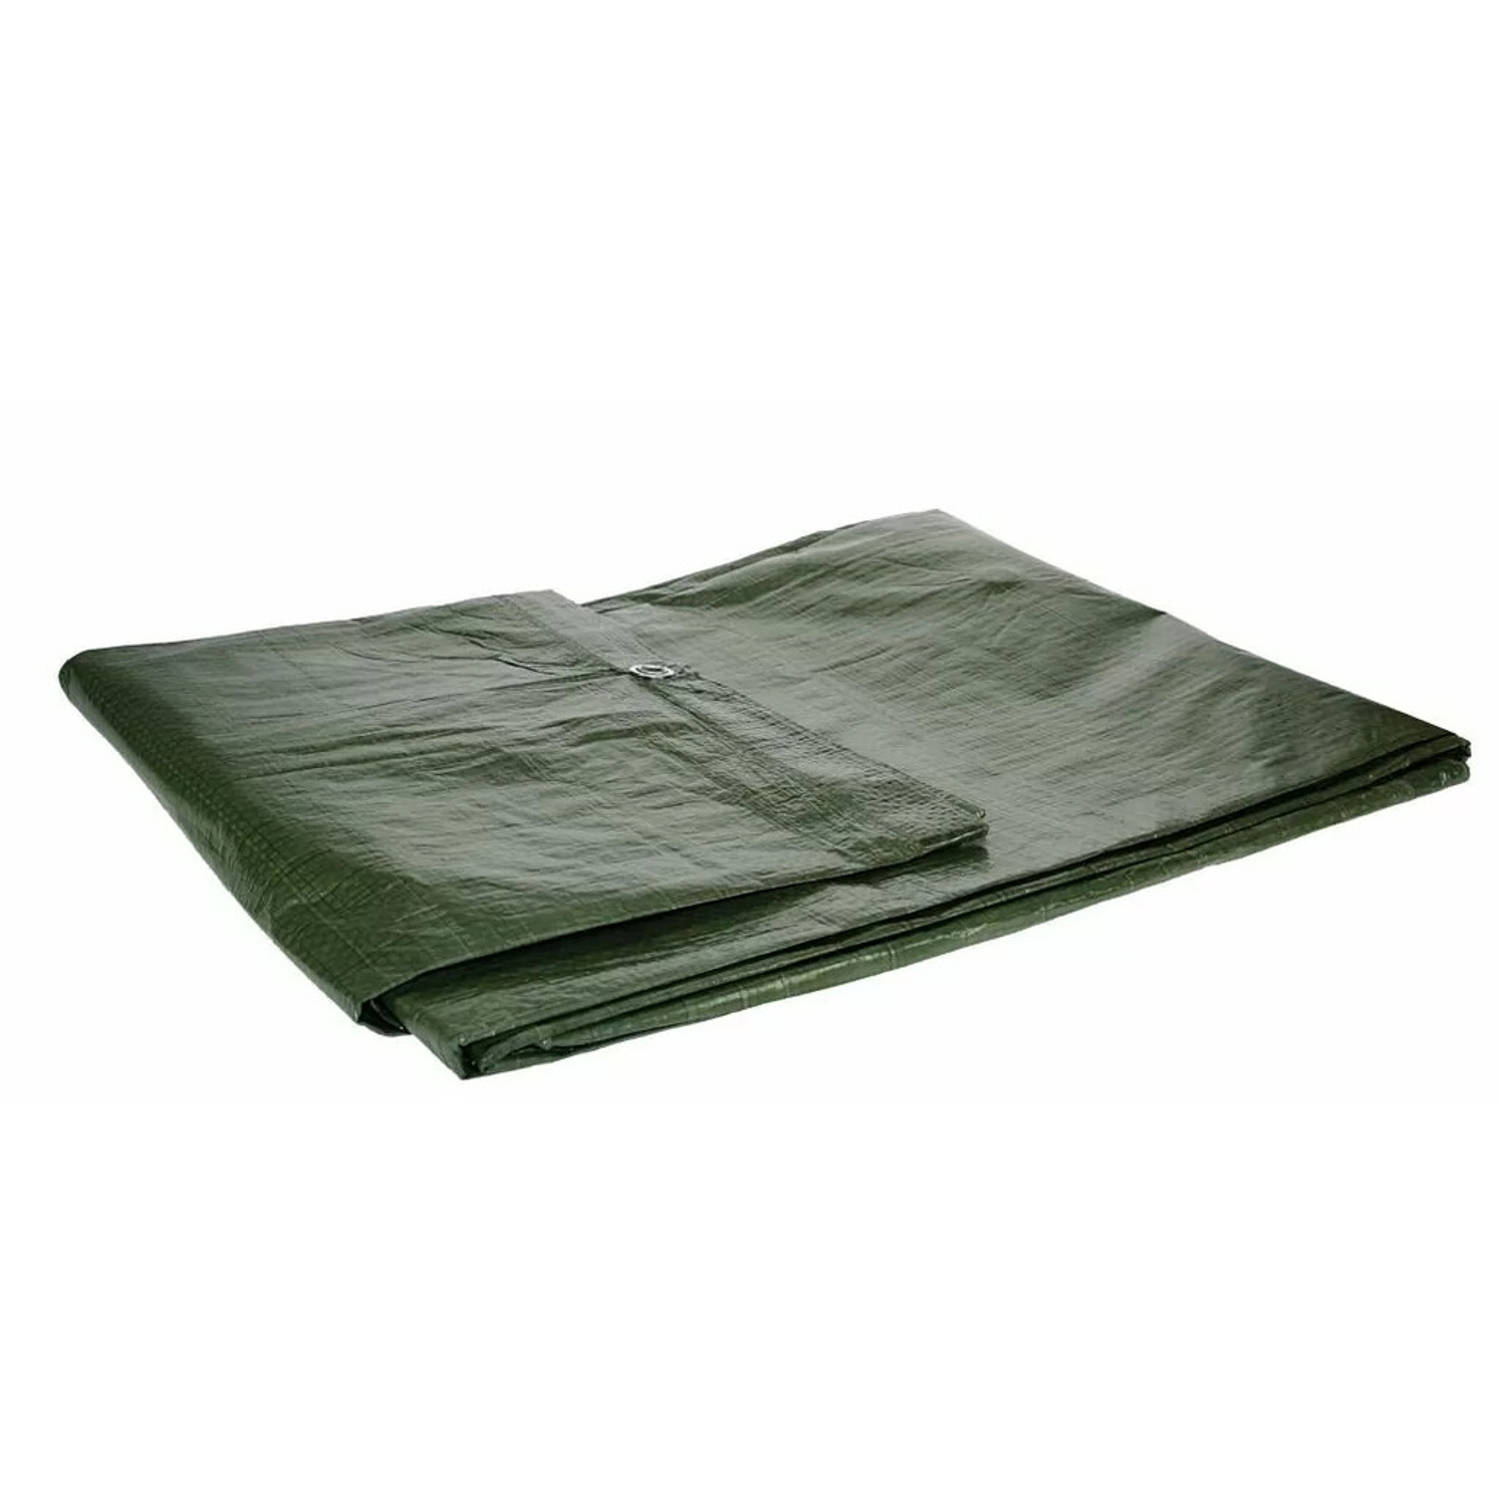 Afdekzeil/dekzeil groen waterdicht kunststof 90 gr/m2 - 600 x 1000 cm - Afdekzeilen